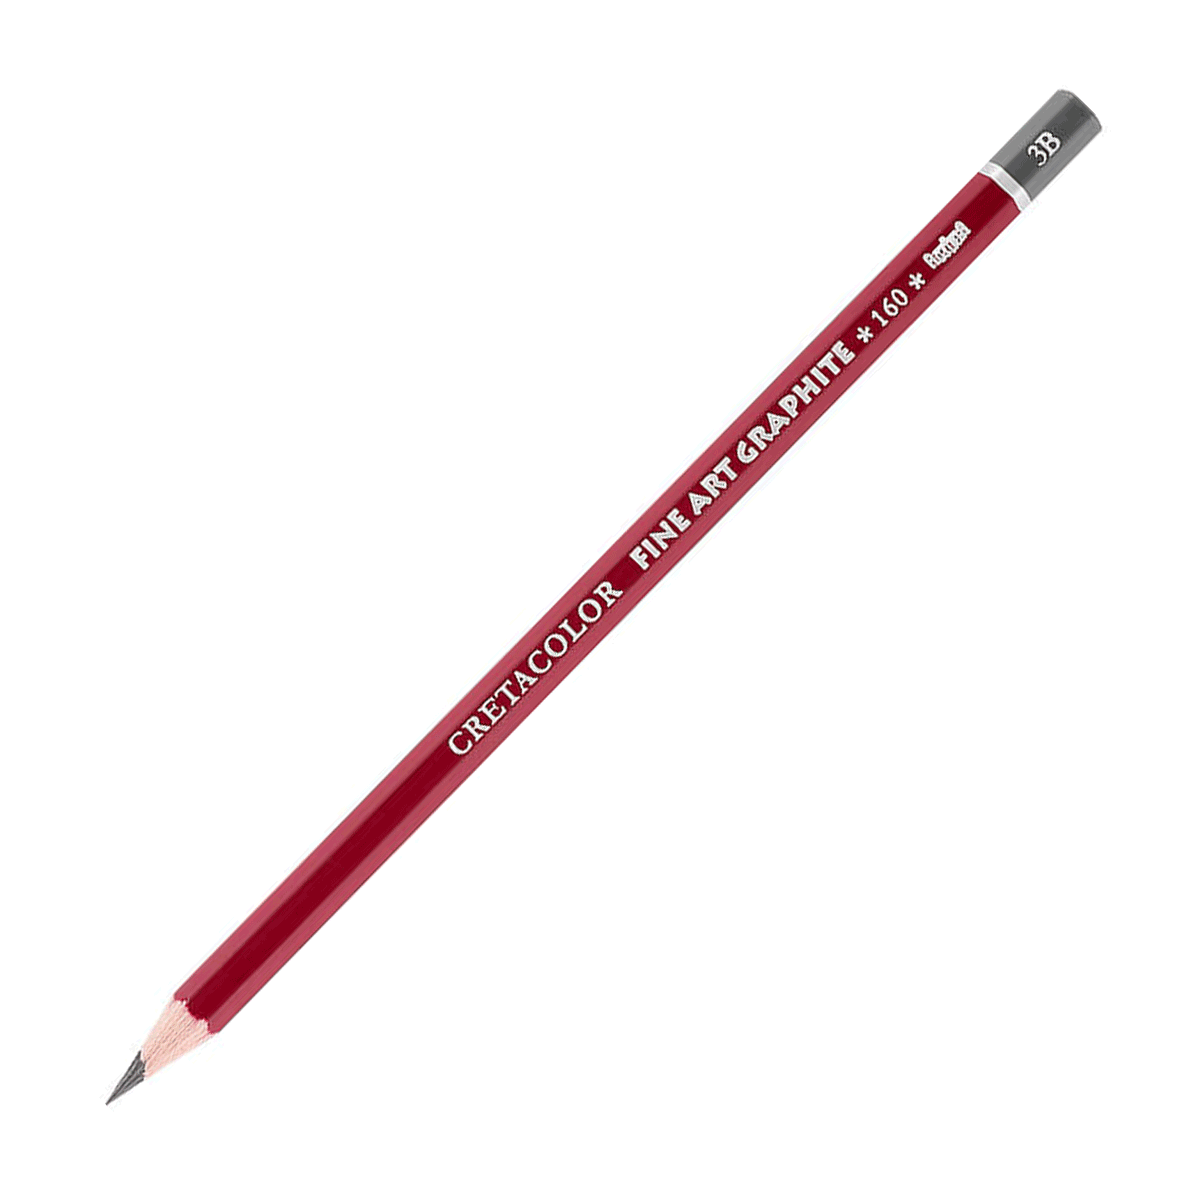 Cretacolor Fine Art Red Graphite Pencil - 3B